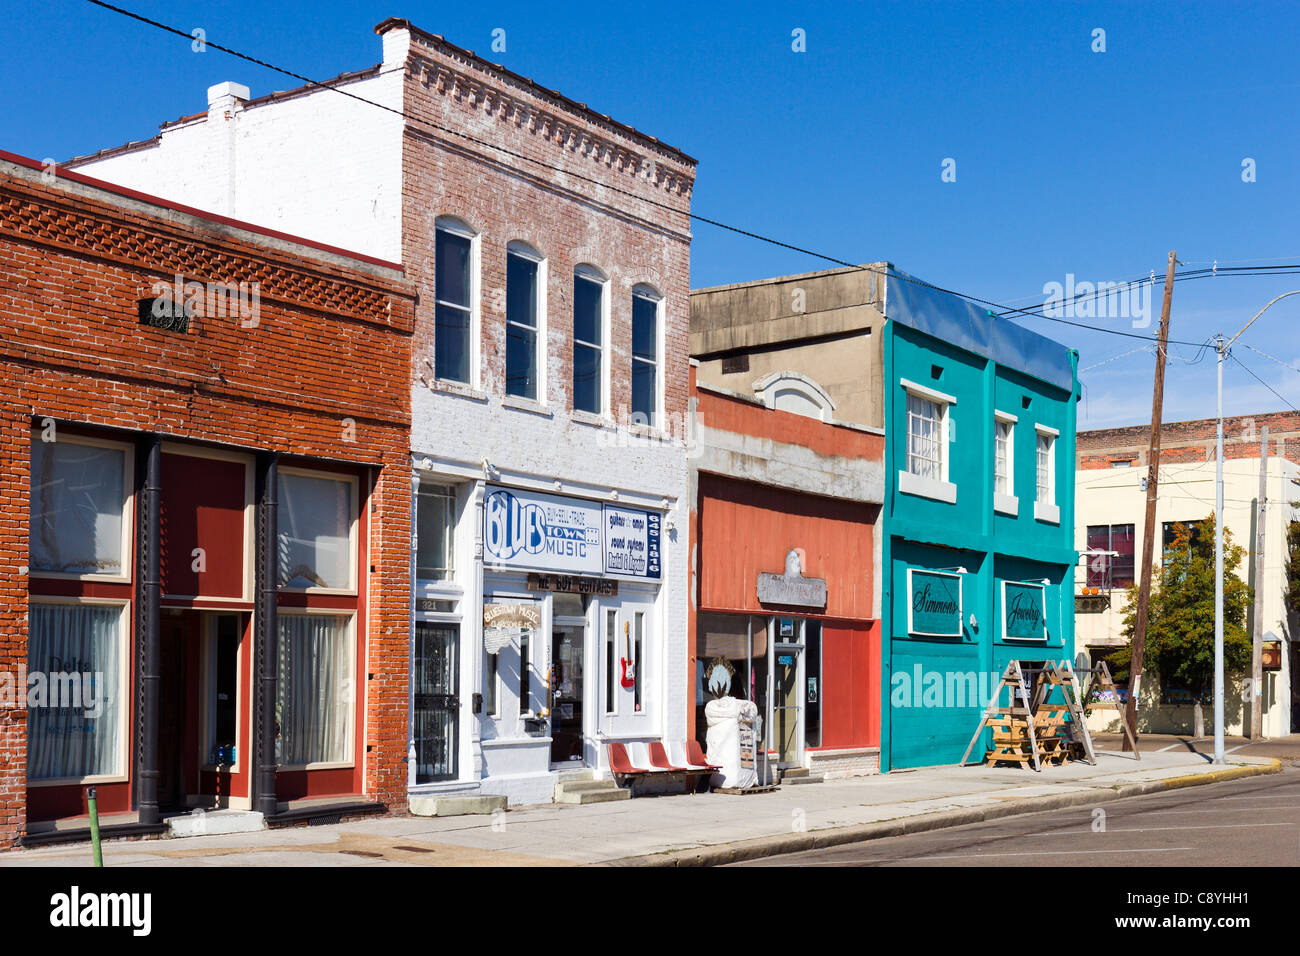 Tiendas en el distrito histórico, Delta Avenue, Clarksdale, Mississippi, EE.UU. Foto de stock